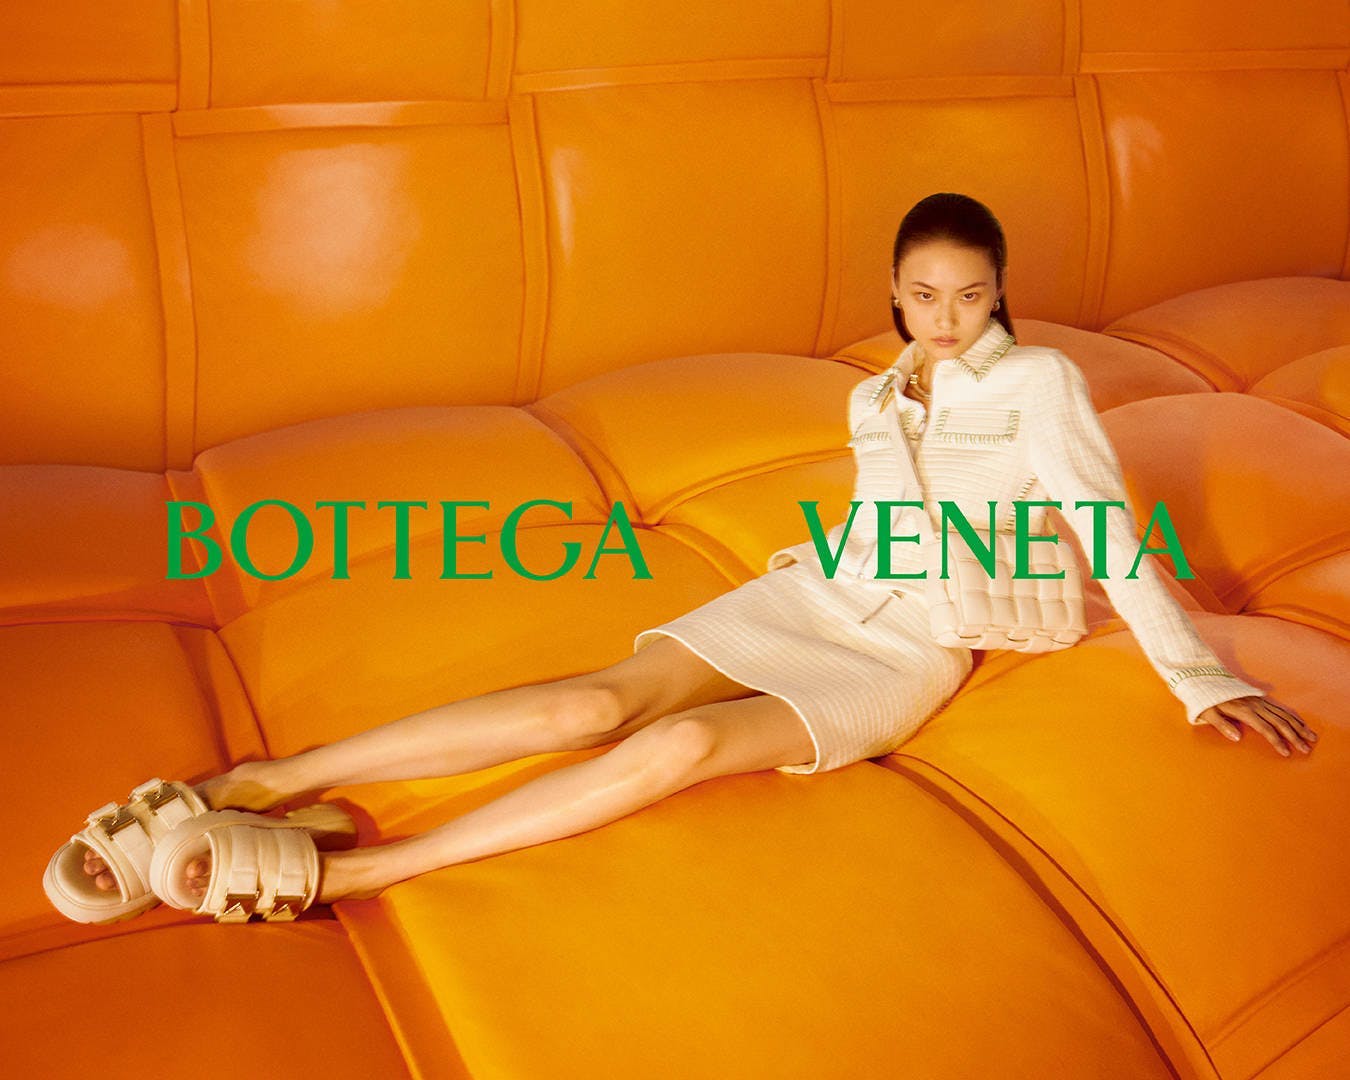 Đi ngược xu hướng thời trang hiện đại, Bottega Veneta chọn cách quay về với bản sắc văn hoá dân tộc